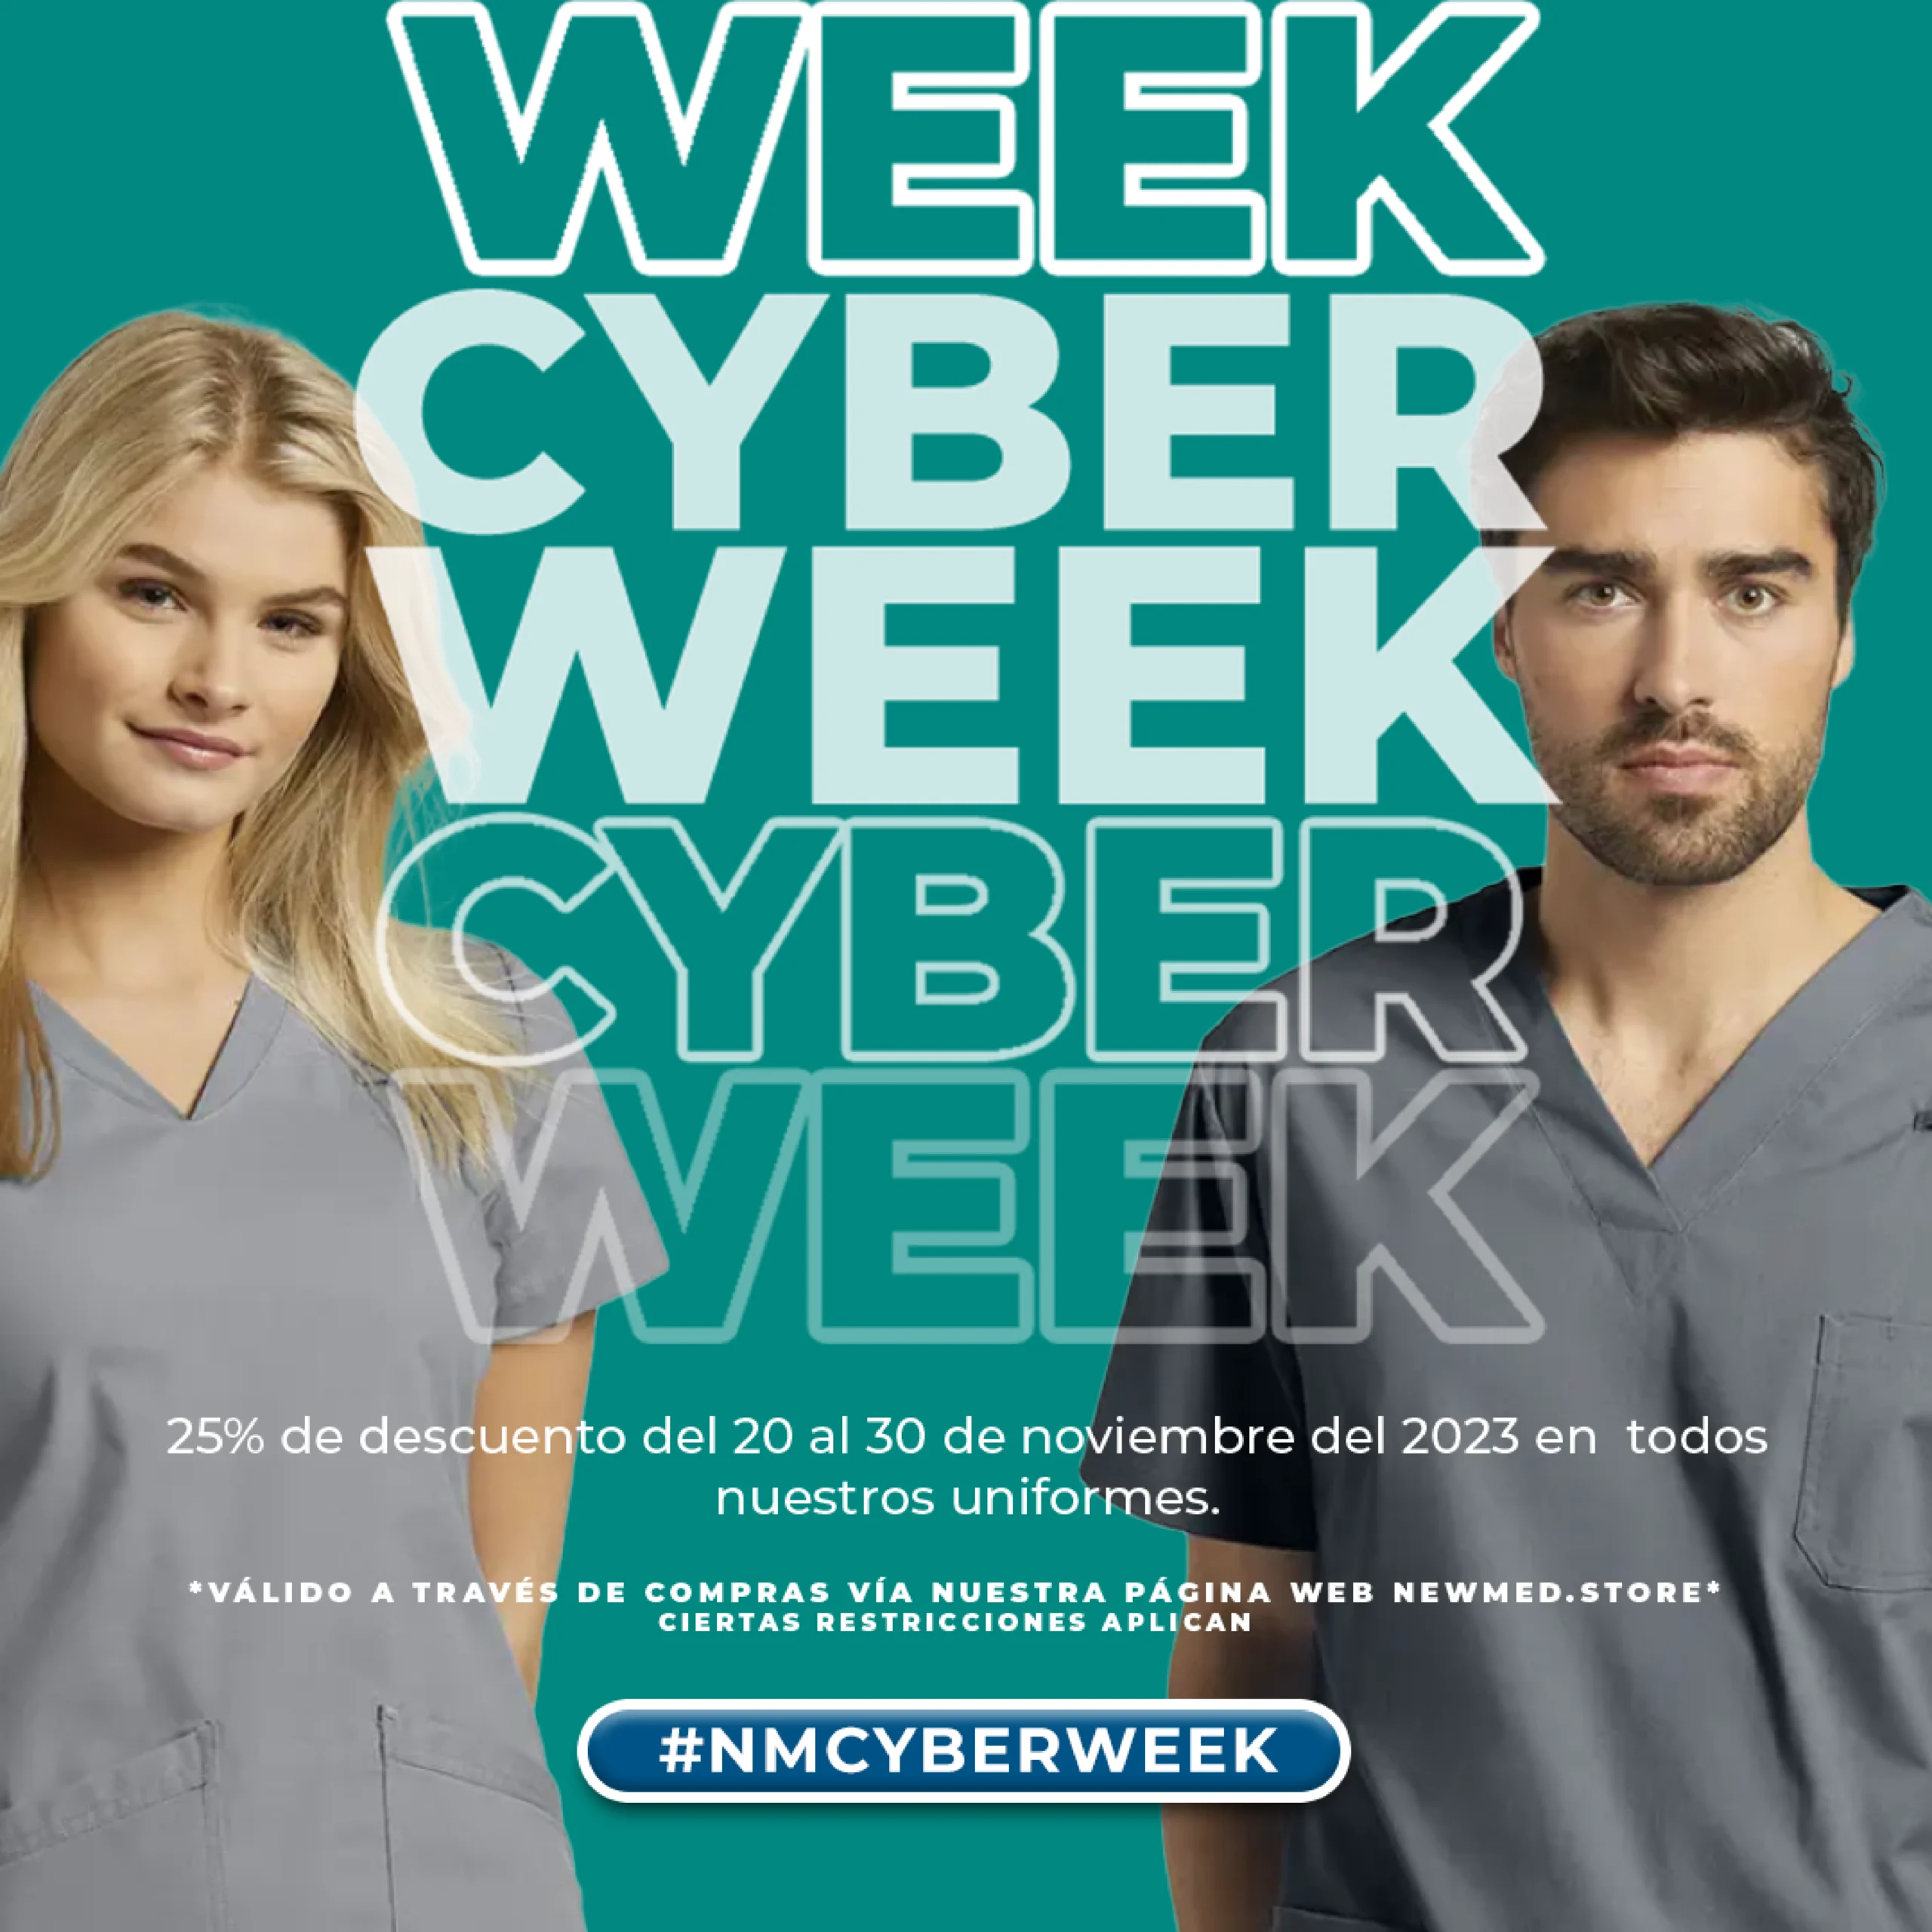 Cyberweek 2023, 25% OFF oferta especial en uniformes | NewMed.store